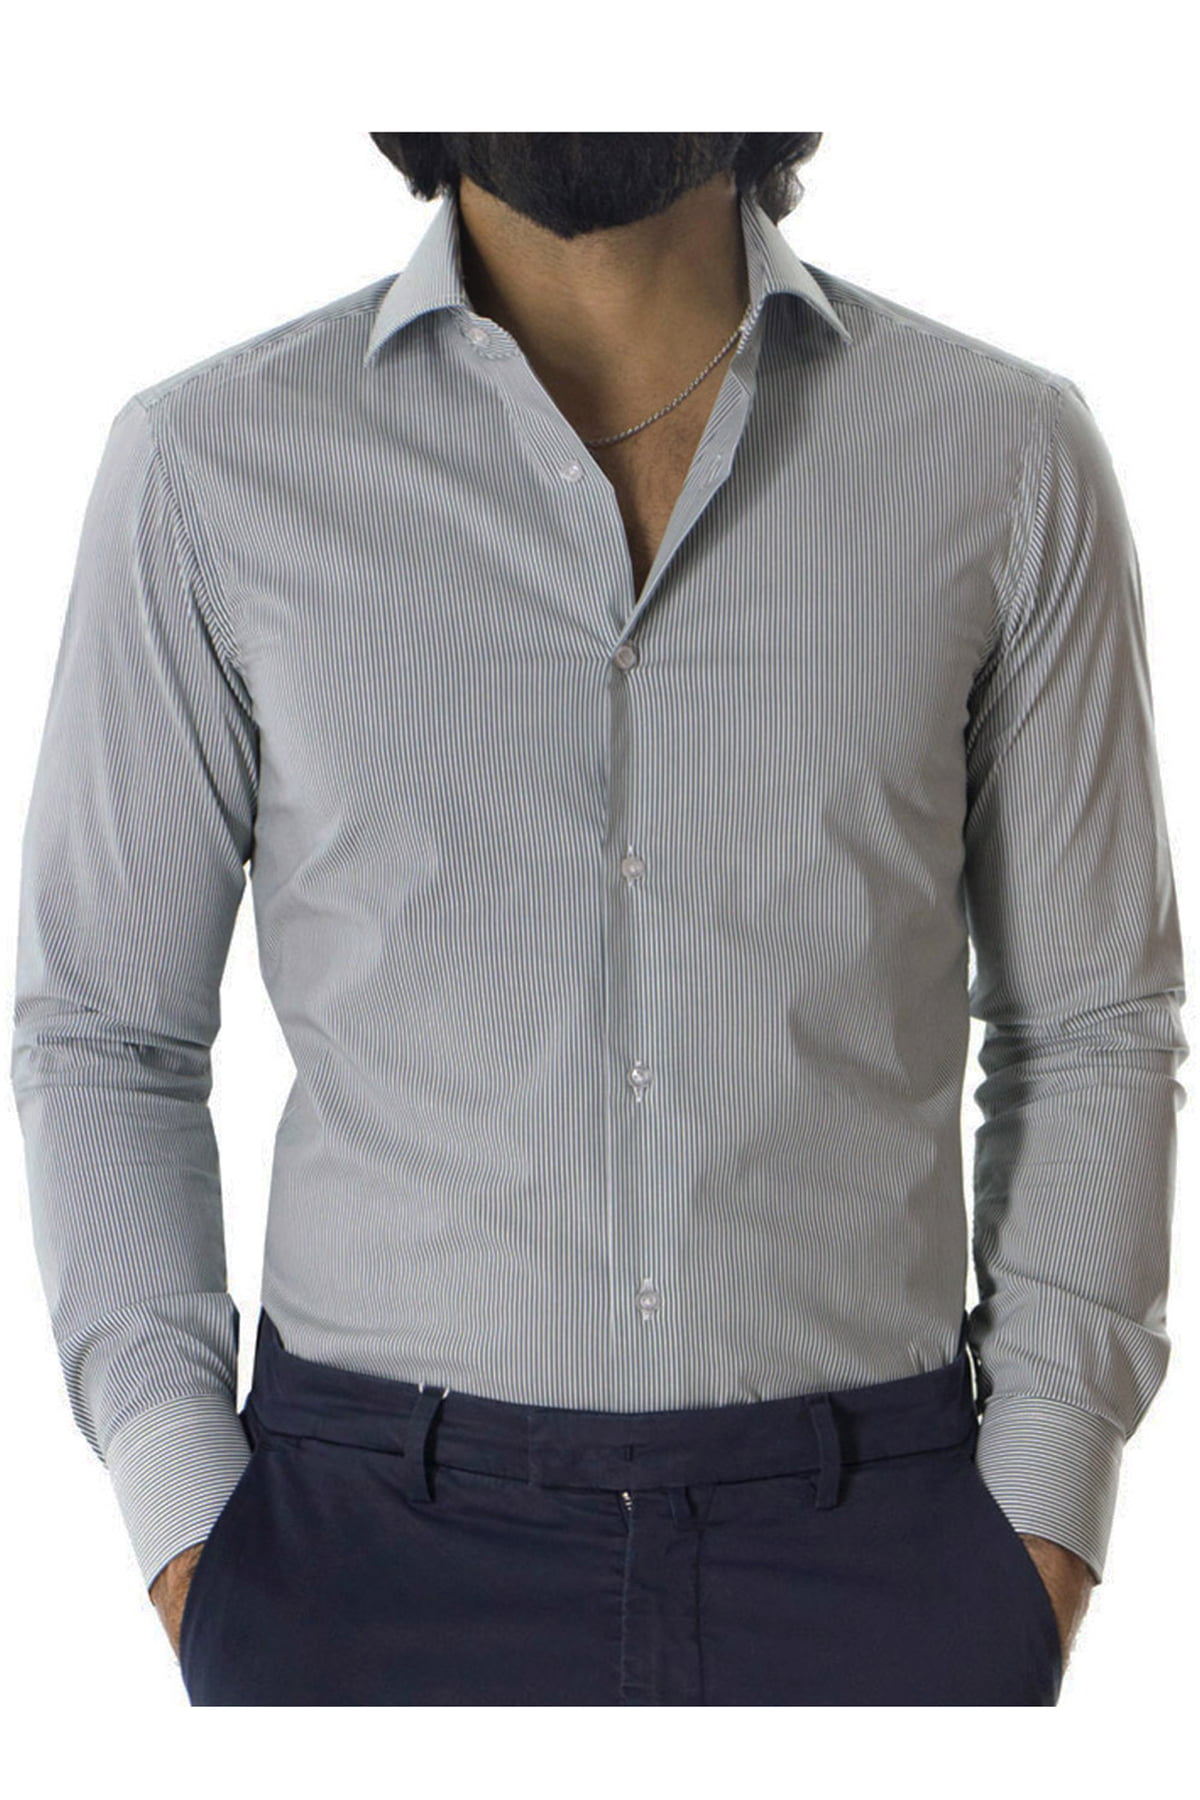 Camicia Uomo millerighe Slim fit in cotone Elasticizzata Collo semi francese Casual e Elegante